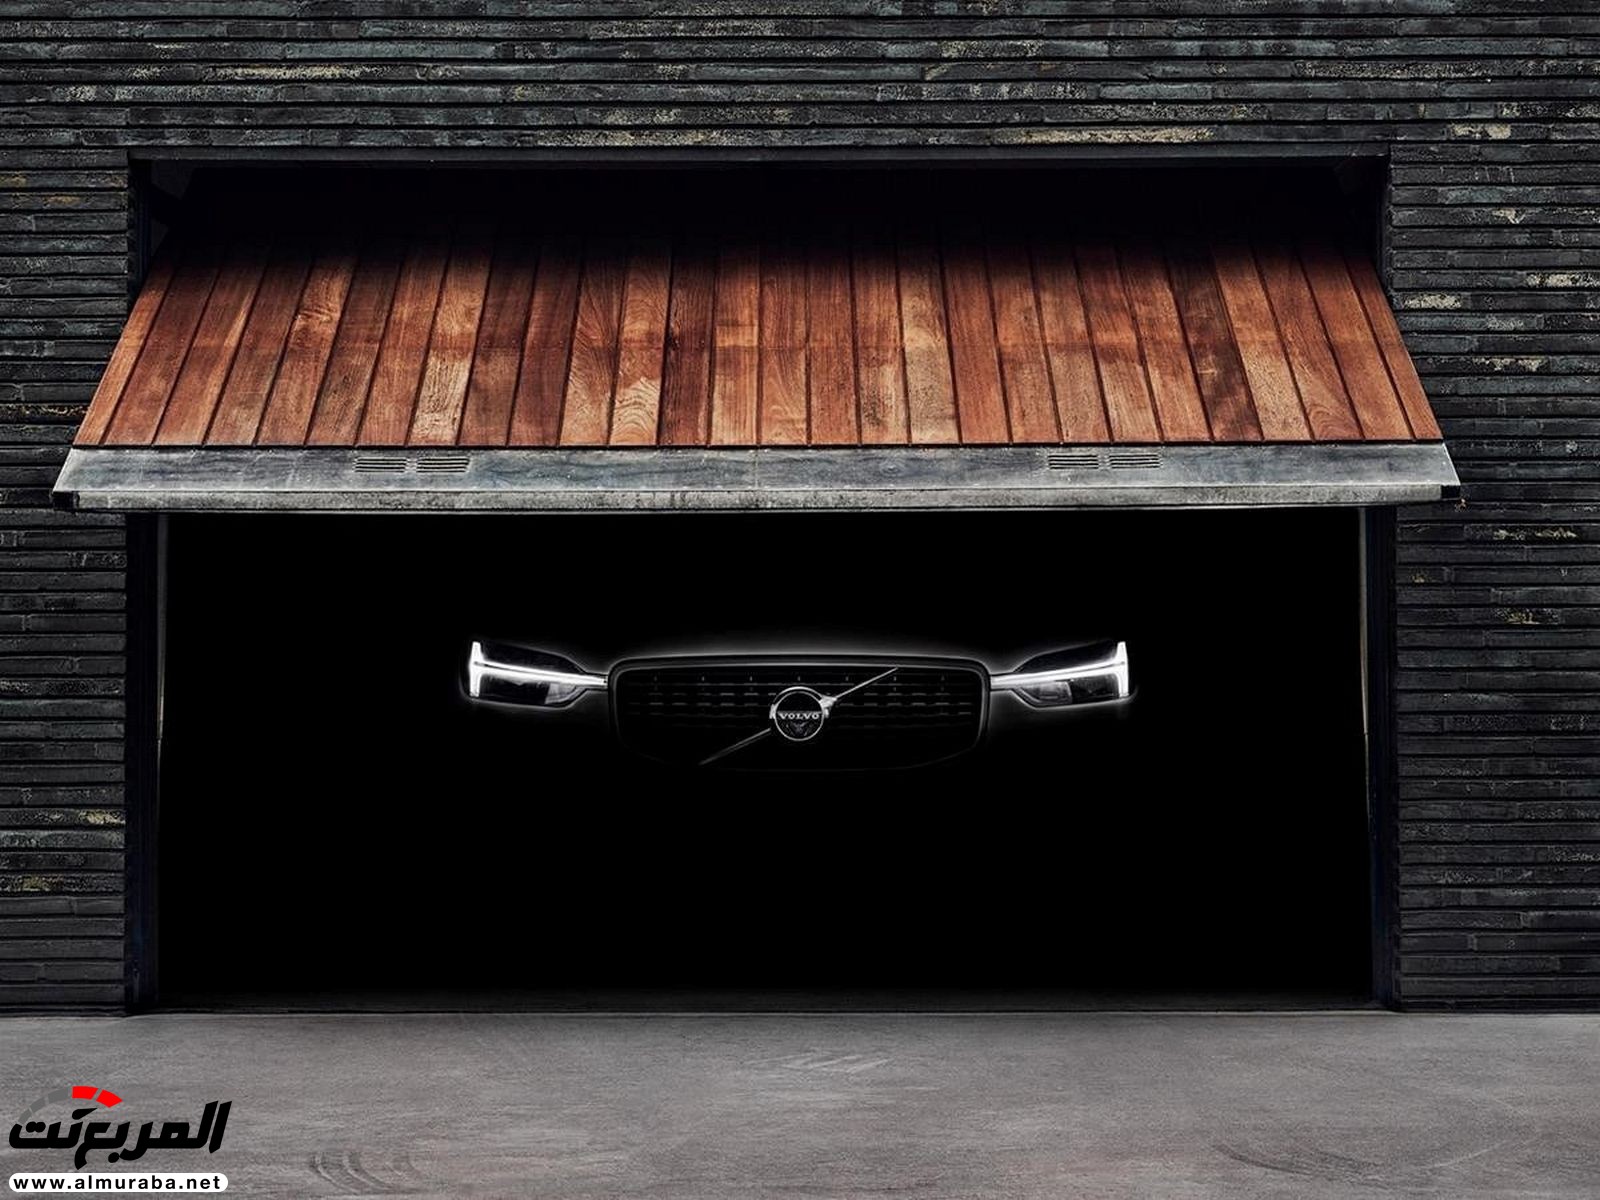 "فولفو" XC60 الجديدة كليا 2018 قادرة على توجيه نفسها لإبعادك عن الحوادث المحتملة Volvo 6